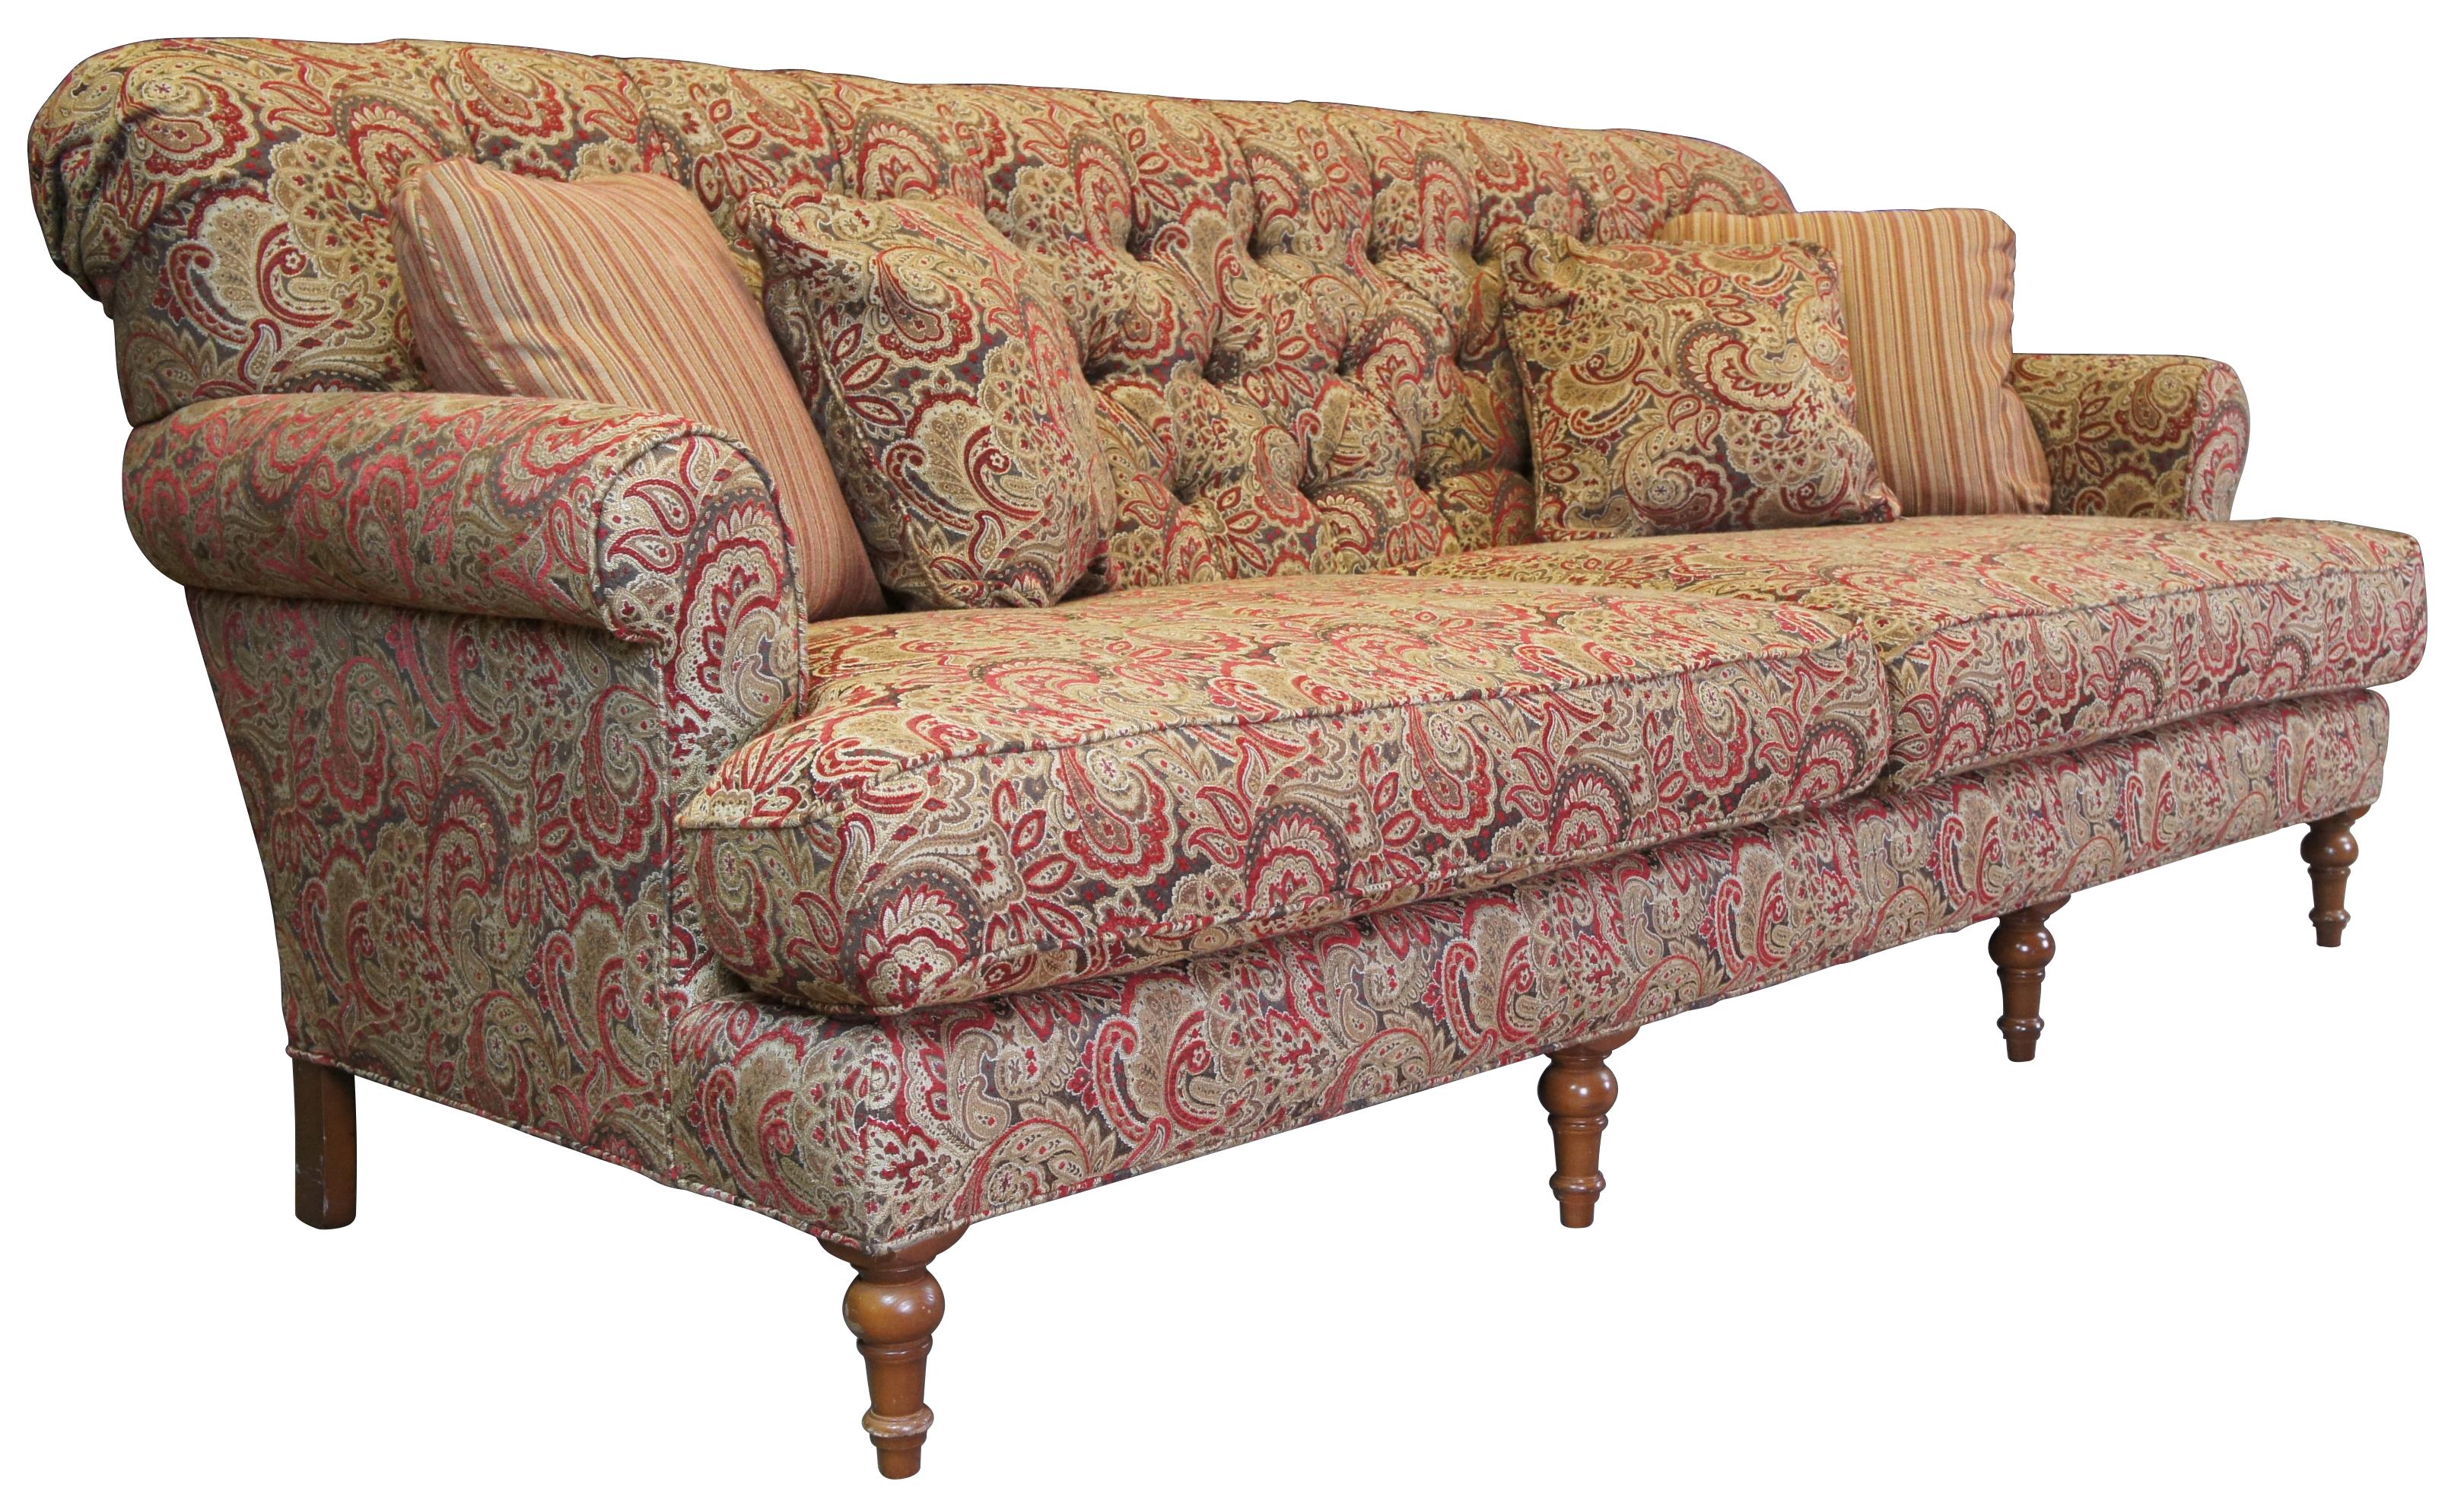 Vintage Arhaus Cambridge Collection Sofa oder Couch mit getufteter Paisley-Polsterung und gerollten Armen. Inklusive vier Kissen.

 Maße: 97